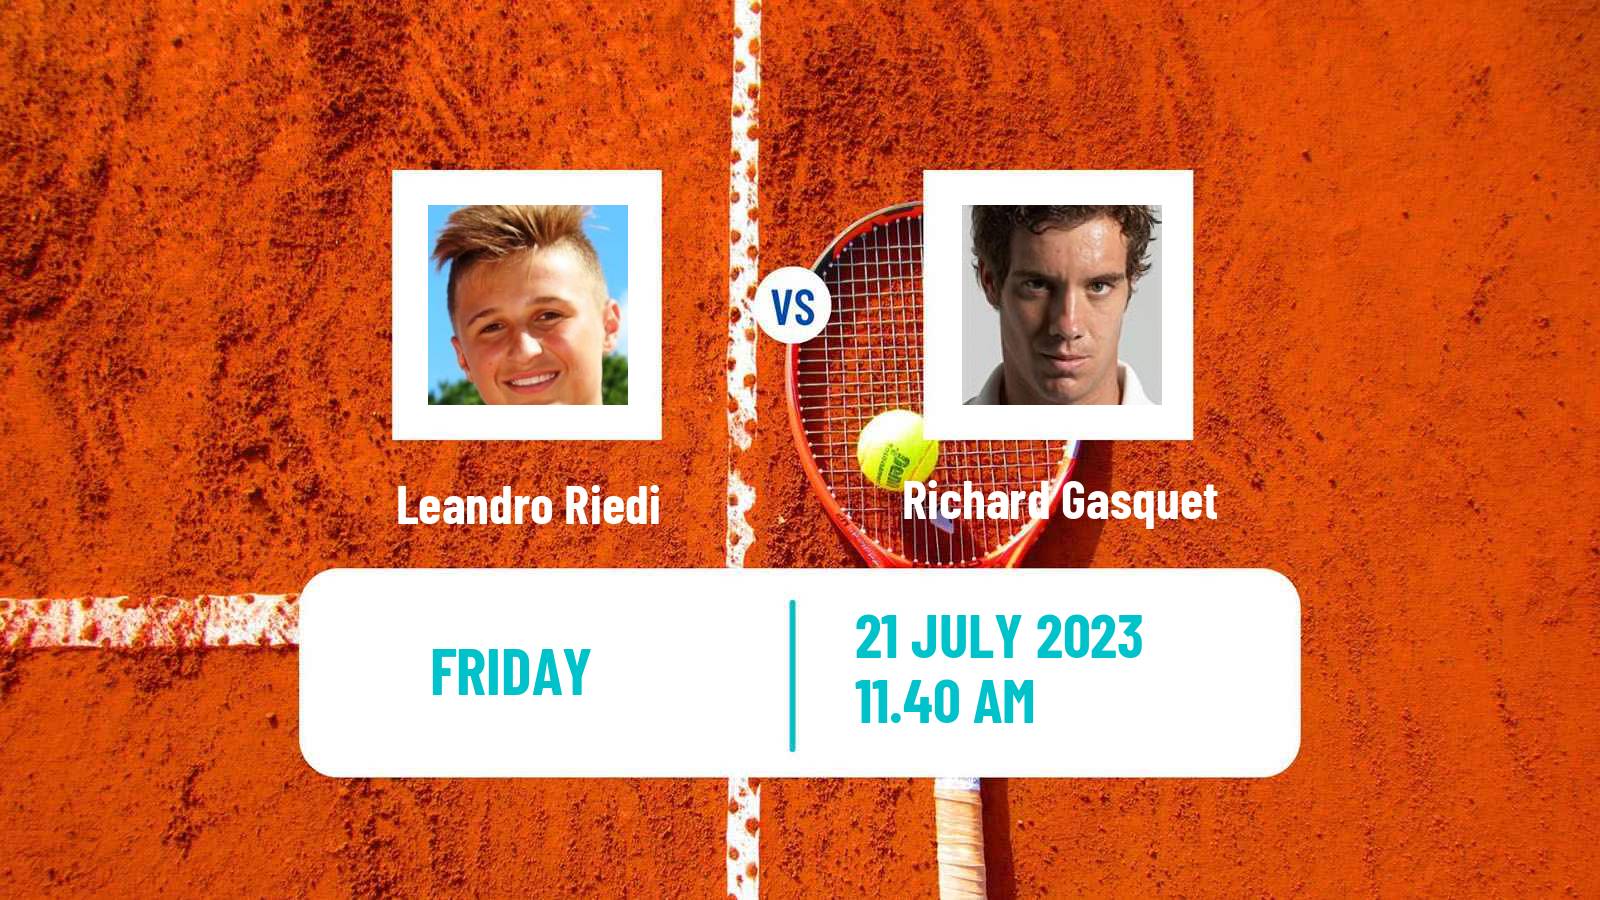 Tennis ATP Hopman Cup Leandro Riedi - Richard Gasquet